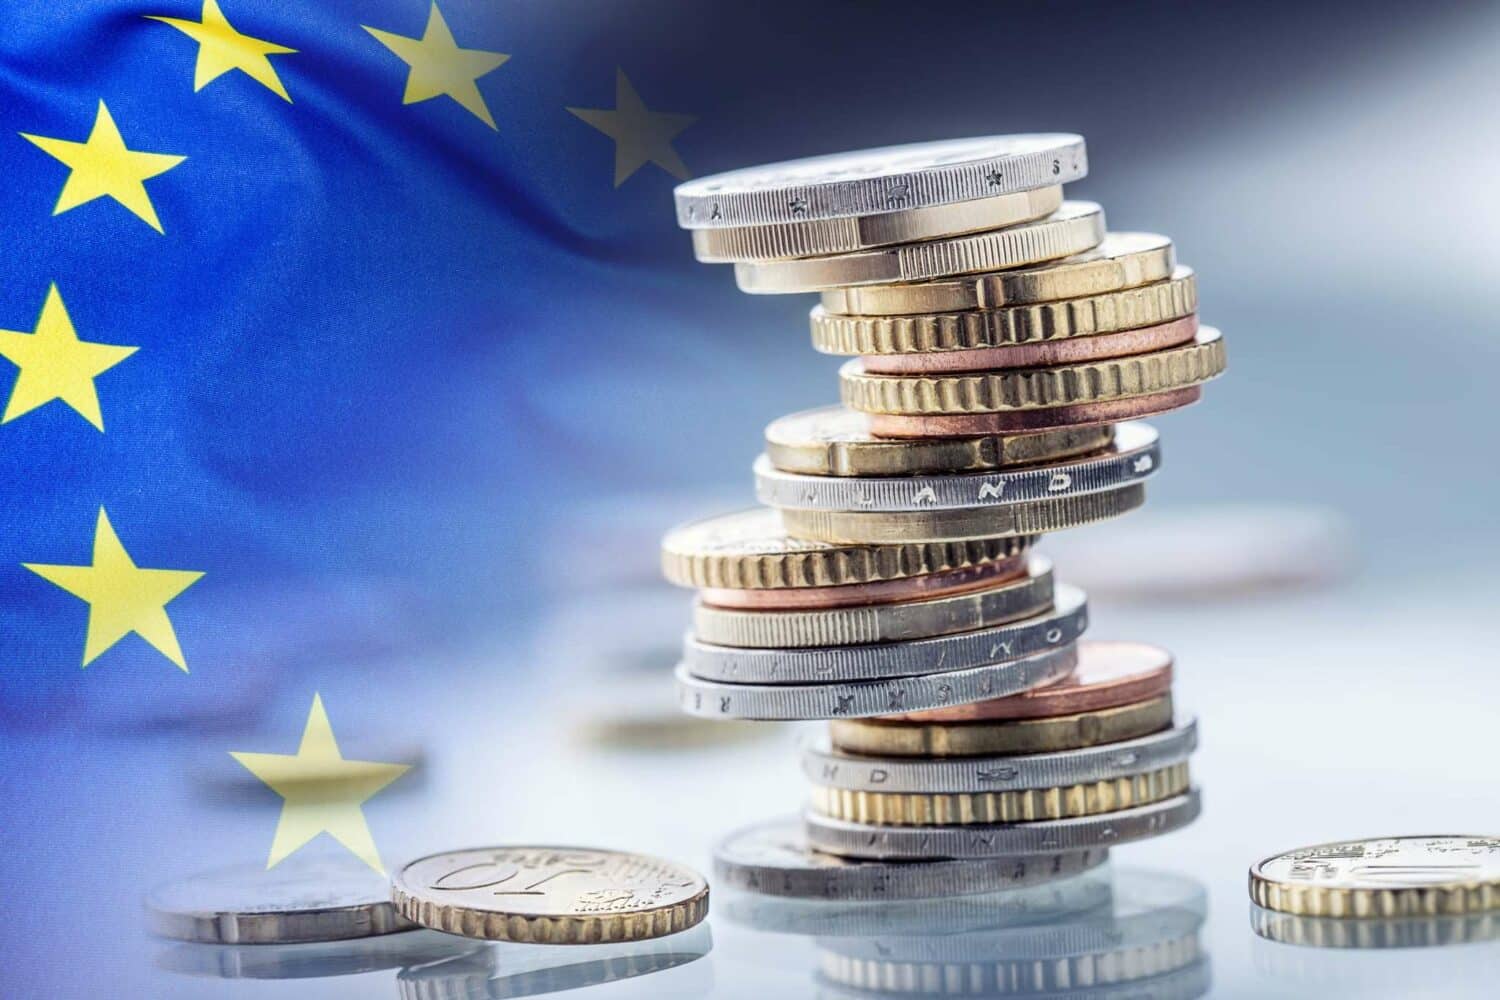 Για τους πόρους του Ταμείου Ανάκαμψης: "Να επιταχυνθούν οι διαδικασίες σε επίπεδο δημόσιας διοίκησης, ώστε να μην χαθεί ούτε ένα ευρώ"